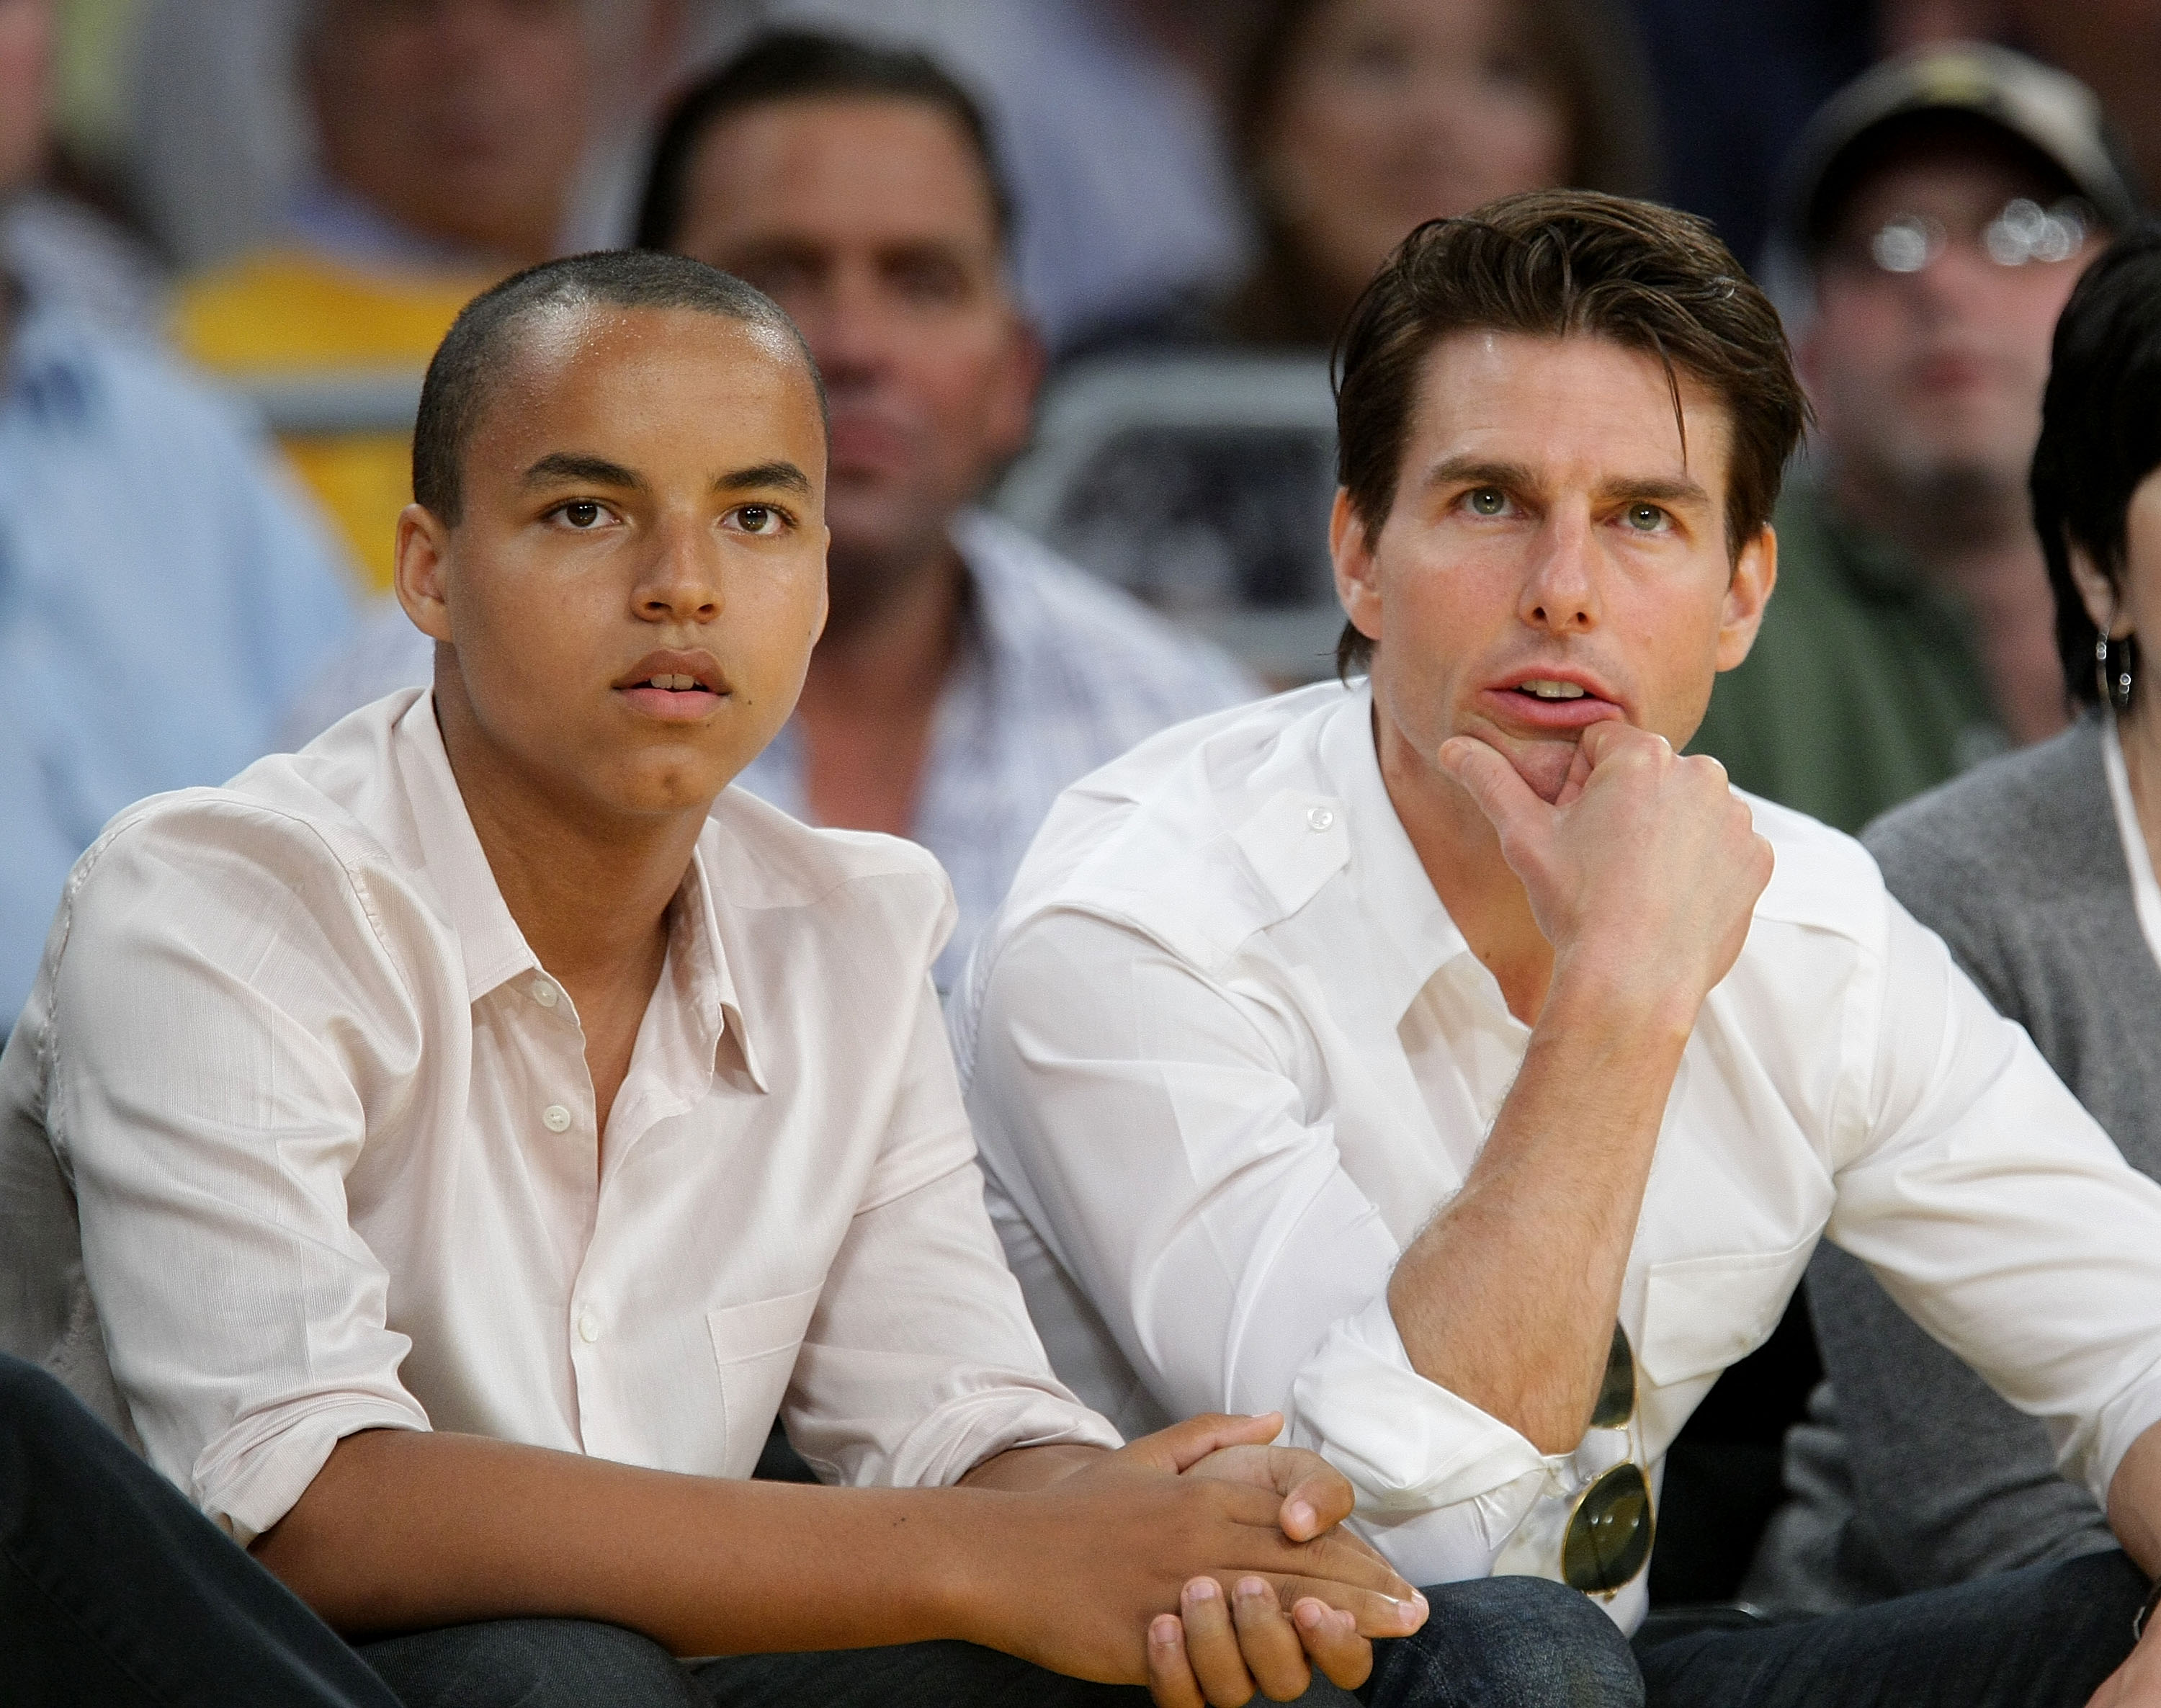 Connor et Tom Cruise lors des playoffs 2009 de la NBA entre les Los Angeles Lakers et les Denver Nuggets, le 21 mai 2009, à Los Angeles, en Californie. | Source : Getty Images